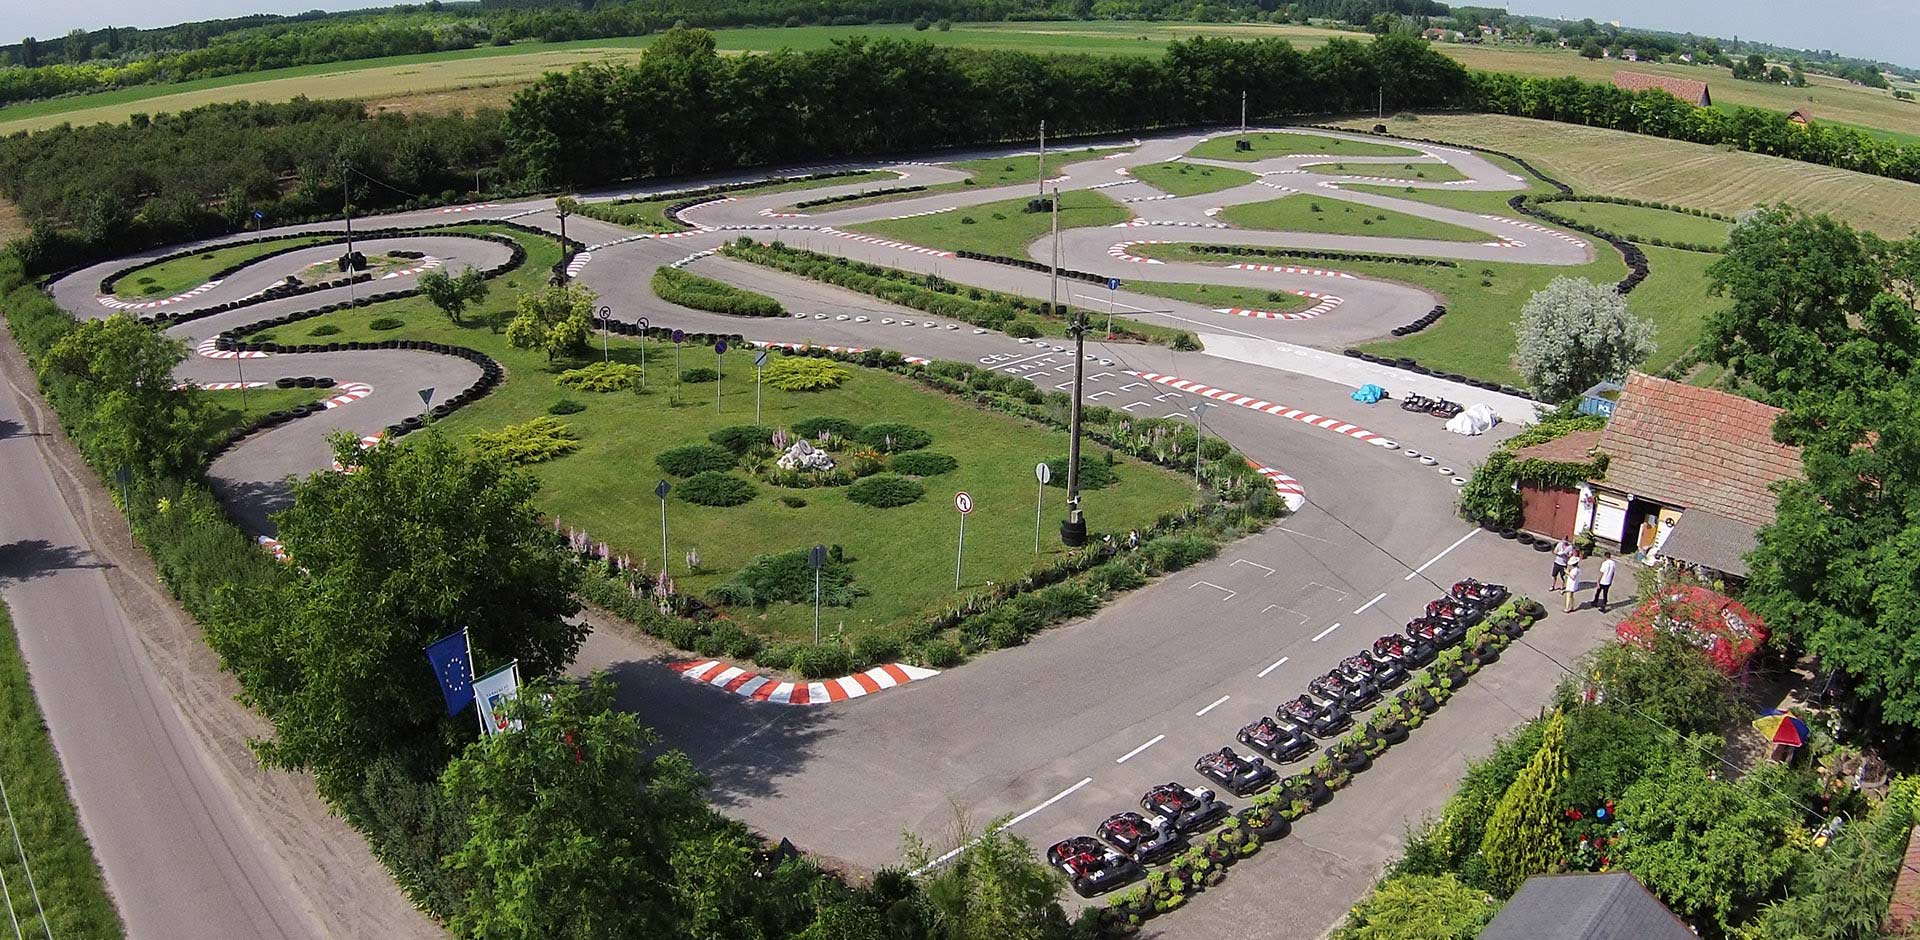 Willkommen in der Bognar Karting Park<p> </ p>
Ungarns längste (820 m) gebaut, um einen Amateur Go-Kart-Bahn